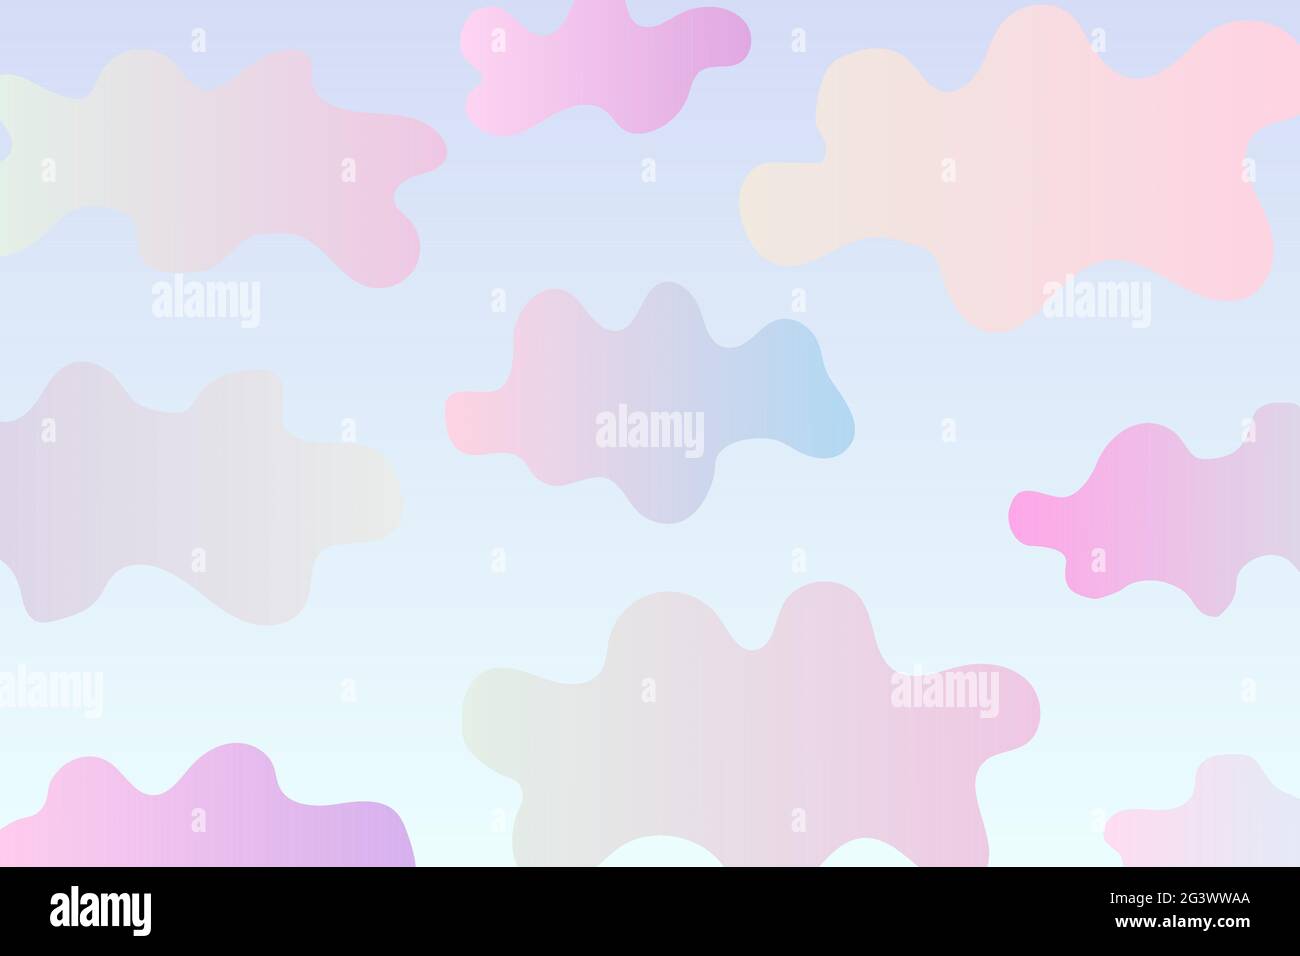 Banner mit abstrakten Wolken. Verlaufende Wolken auf blauem Himmel Hintergrund. Lila, rosa, blau farbenfrohe, handgezeichnete Cumulus-Wolken. Speicherplatz kopieren. Sommer helle Länder Stock Vektor